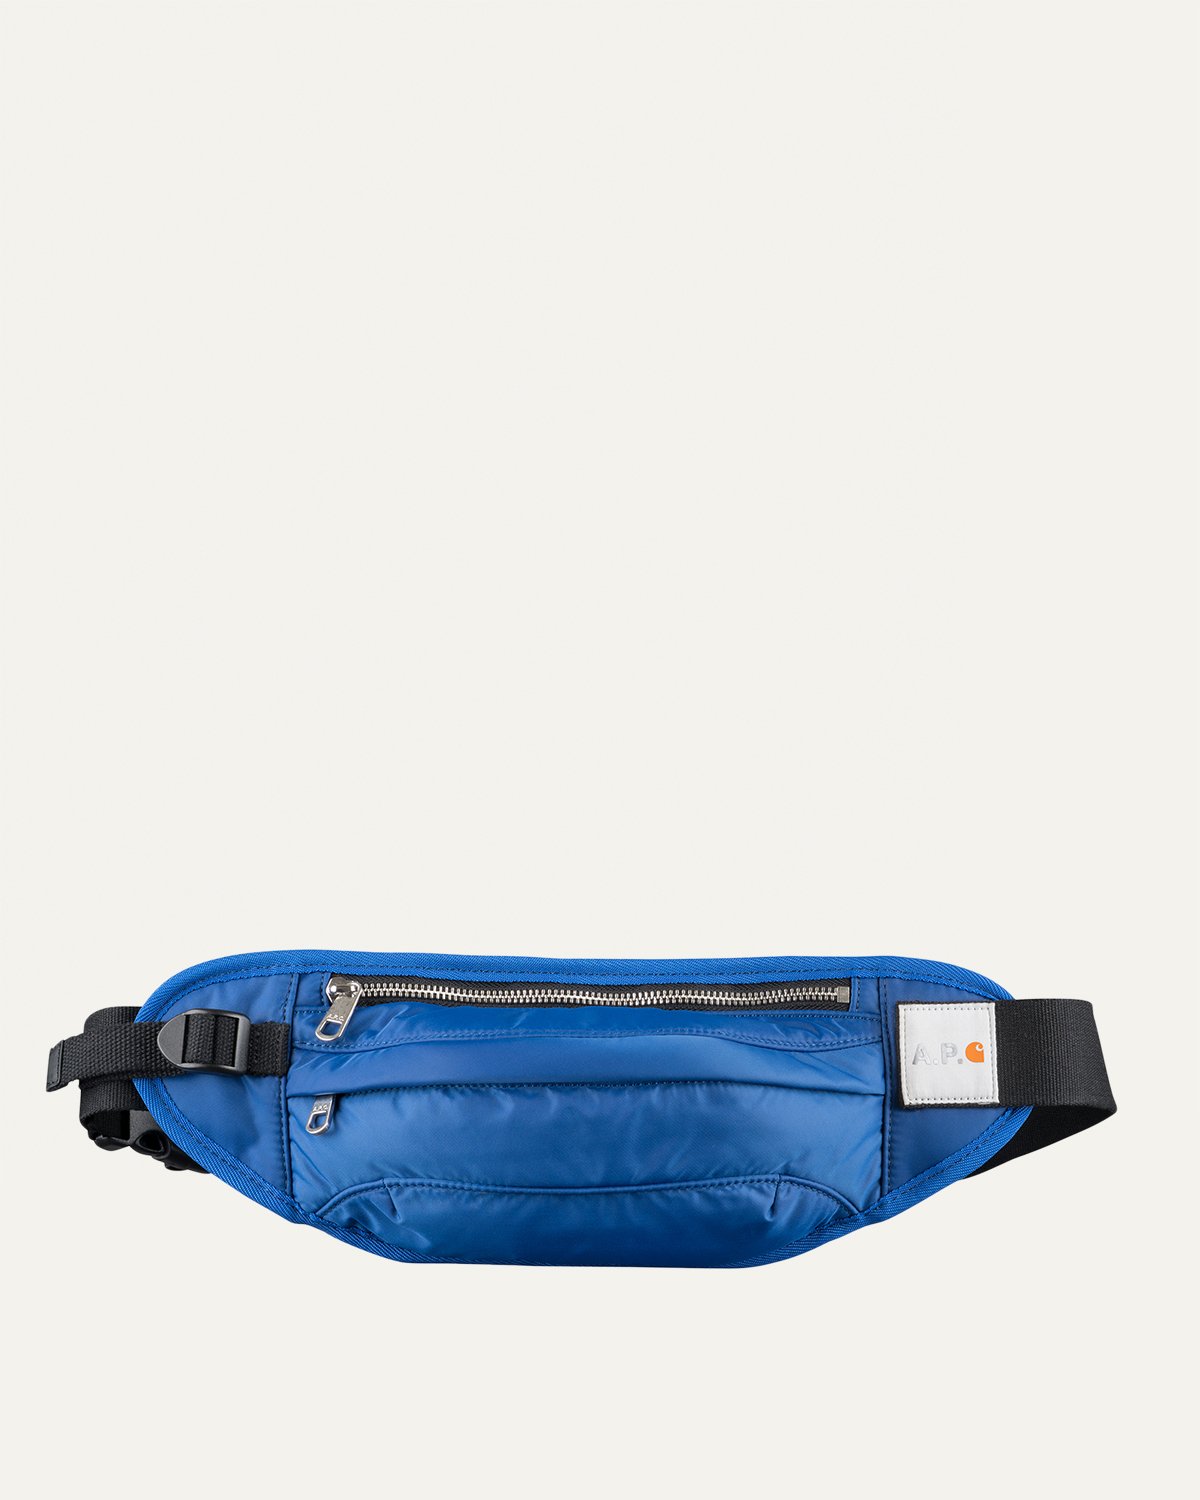 A.P.C. x Carhartt WIP - Shawn Hip Bag Indigo - Accessories - Blue - Image 1